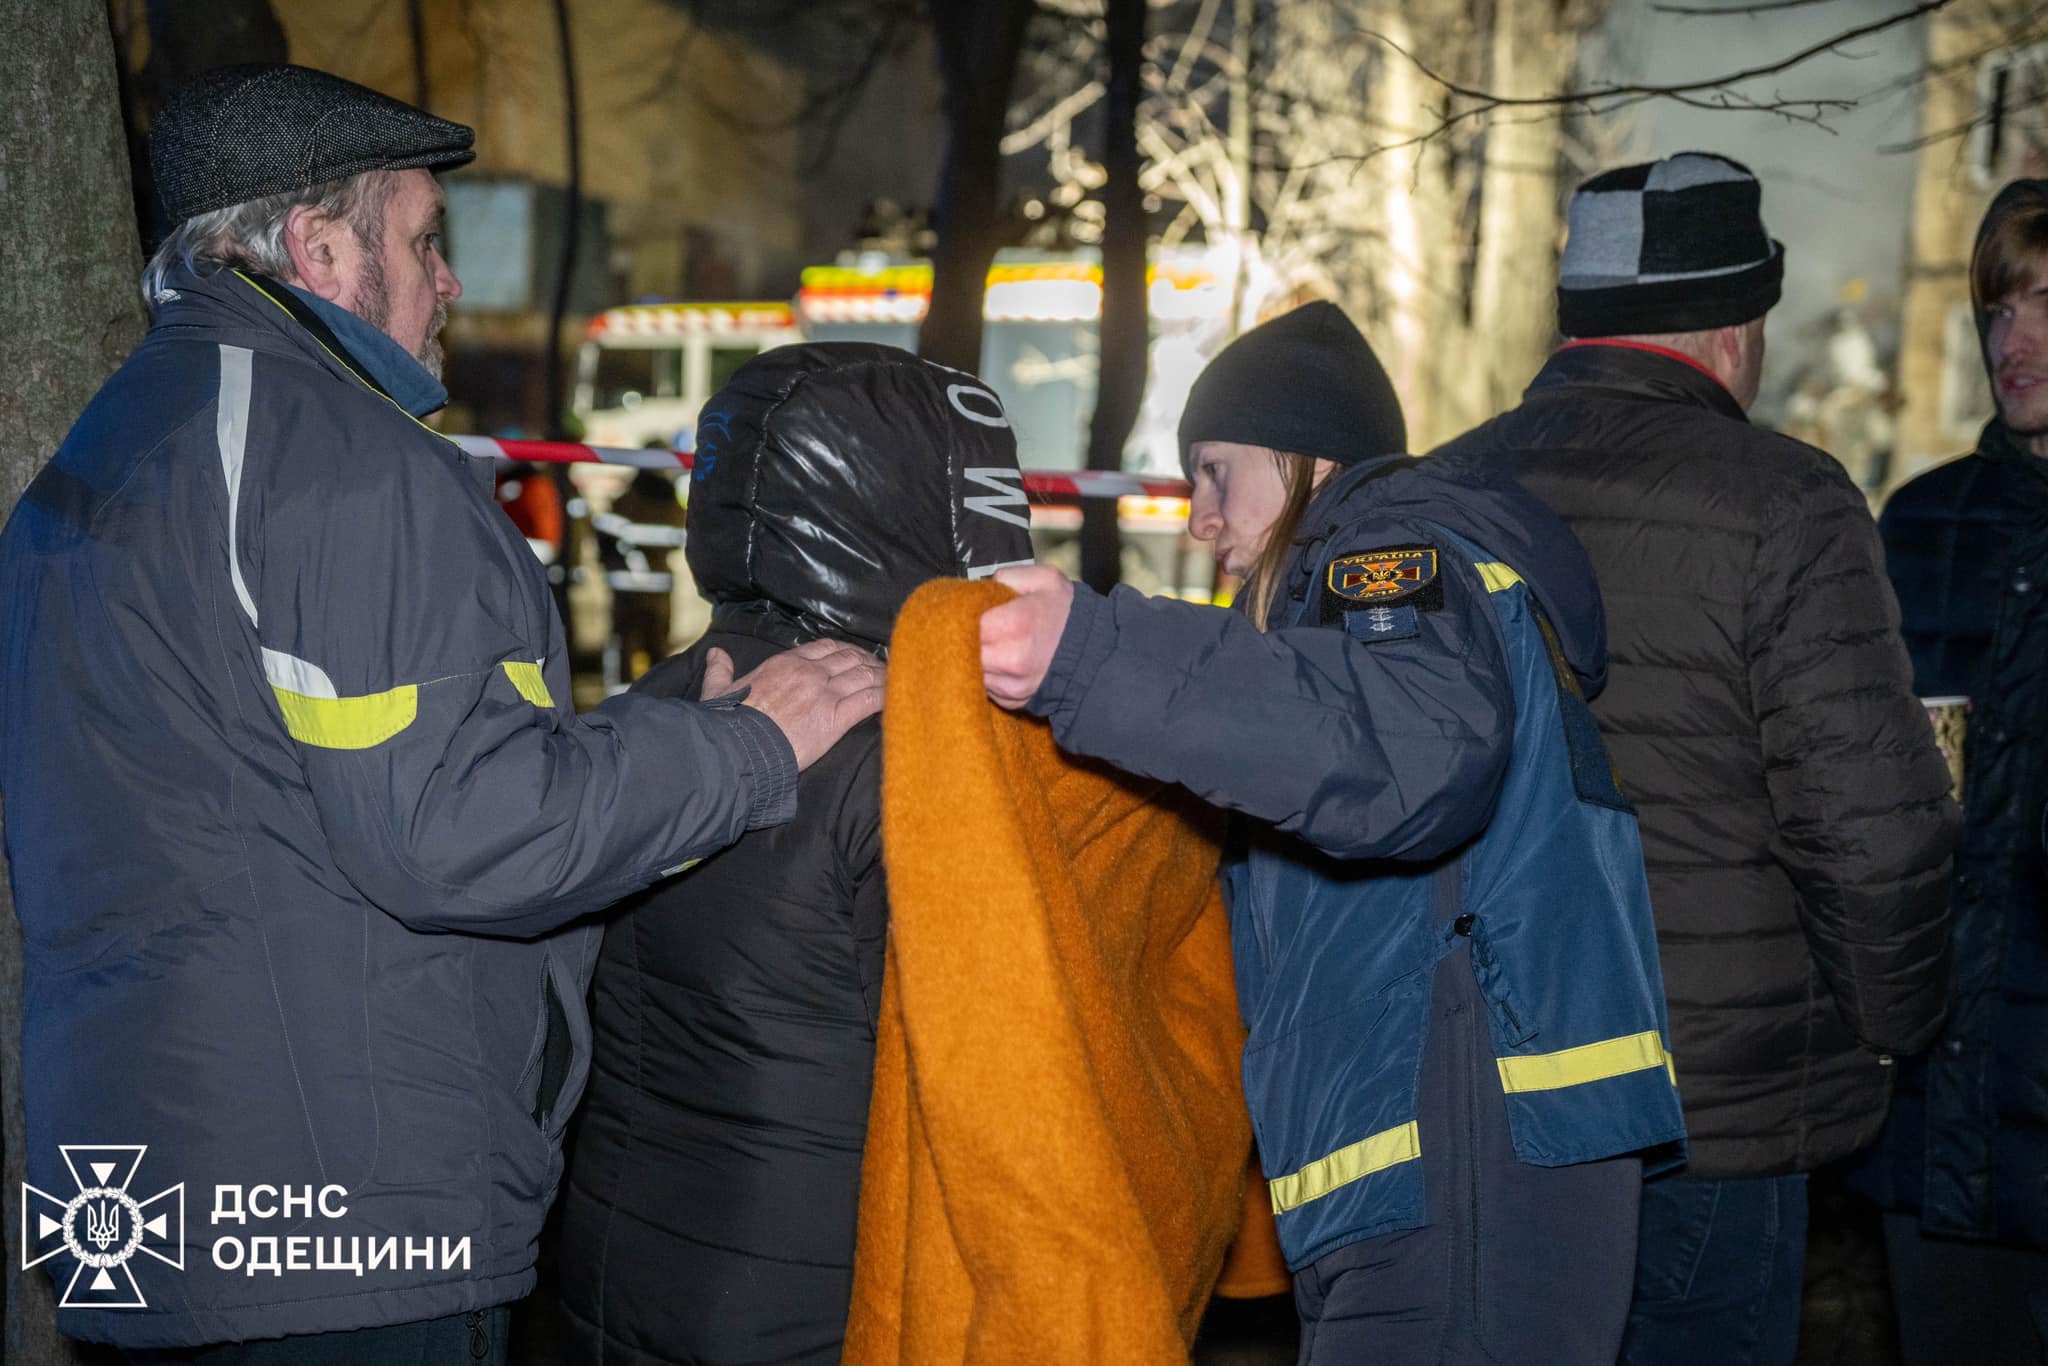 Черная ночь для Одессы: дрон унес жизни нескольких людей